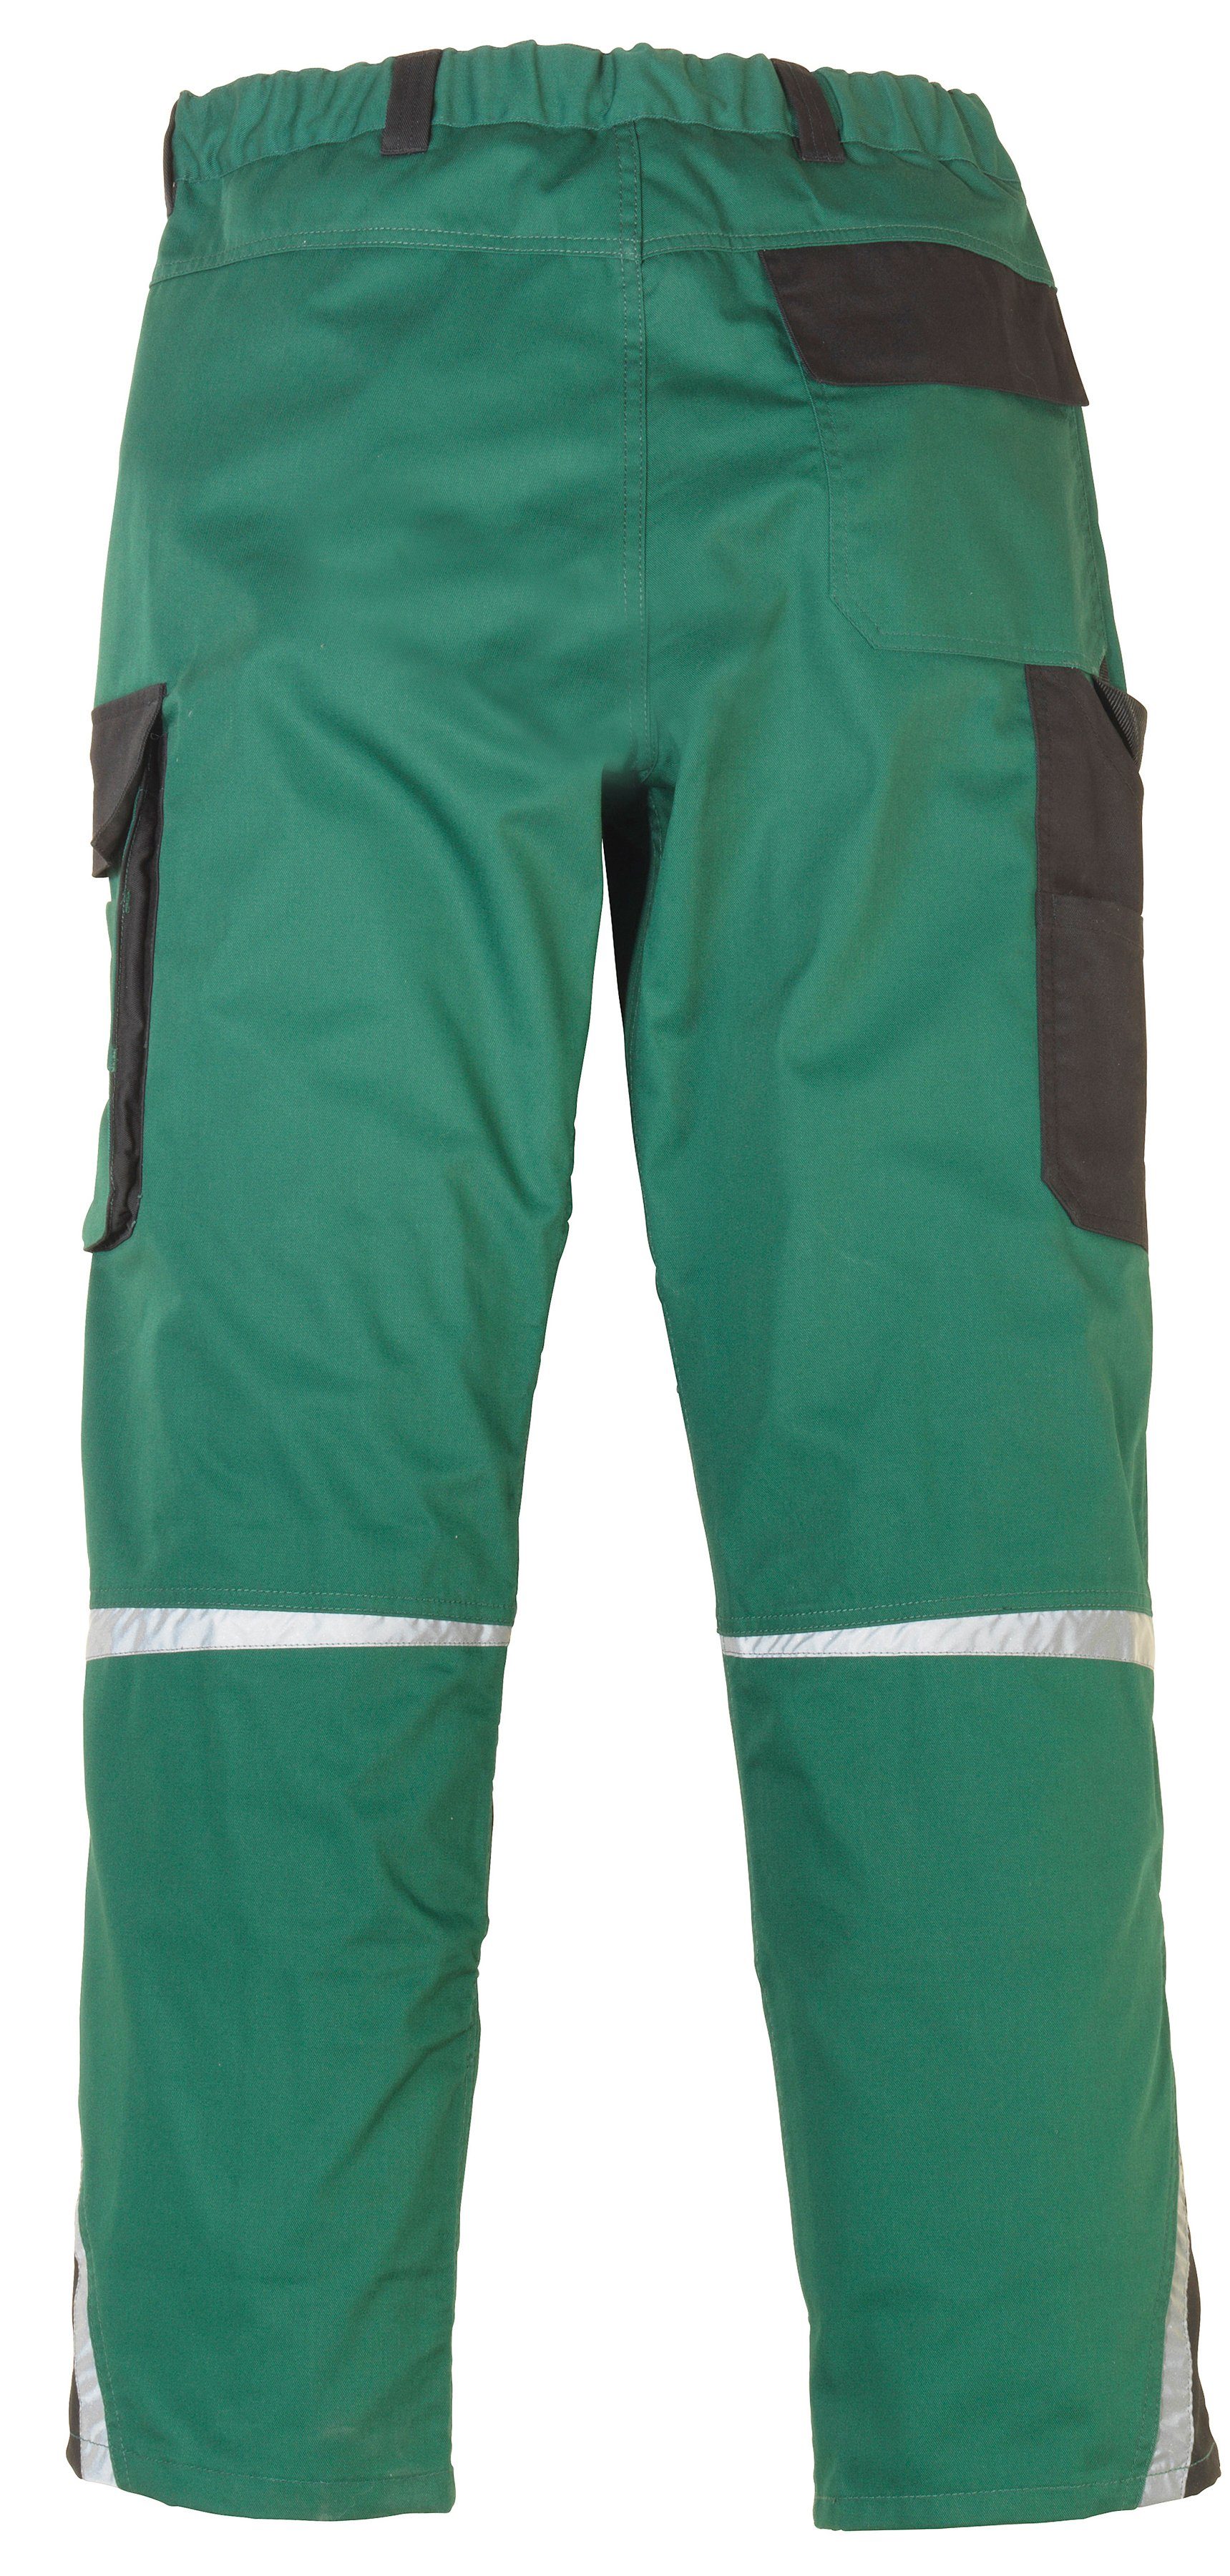 Arbeitshose safety& mit Knieverstärkung grün-schwarz more Pull